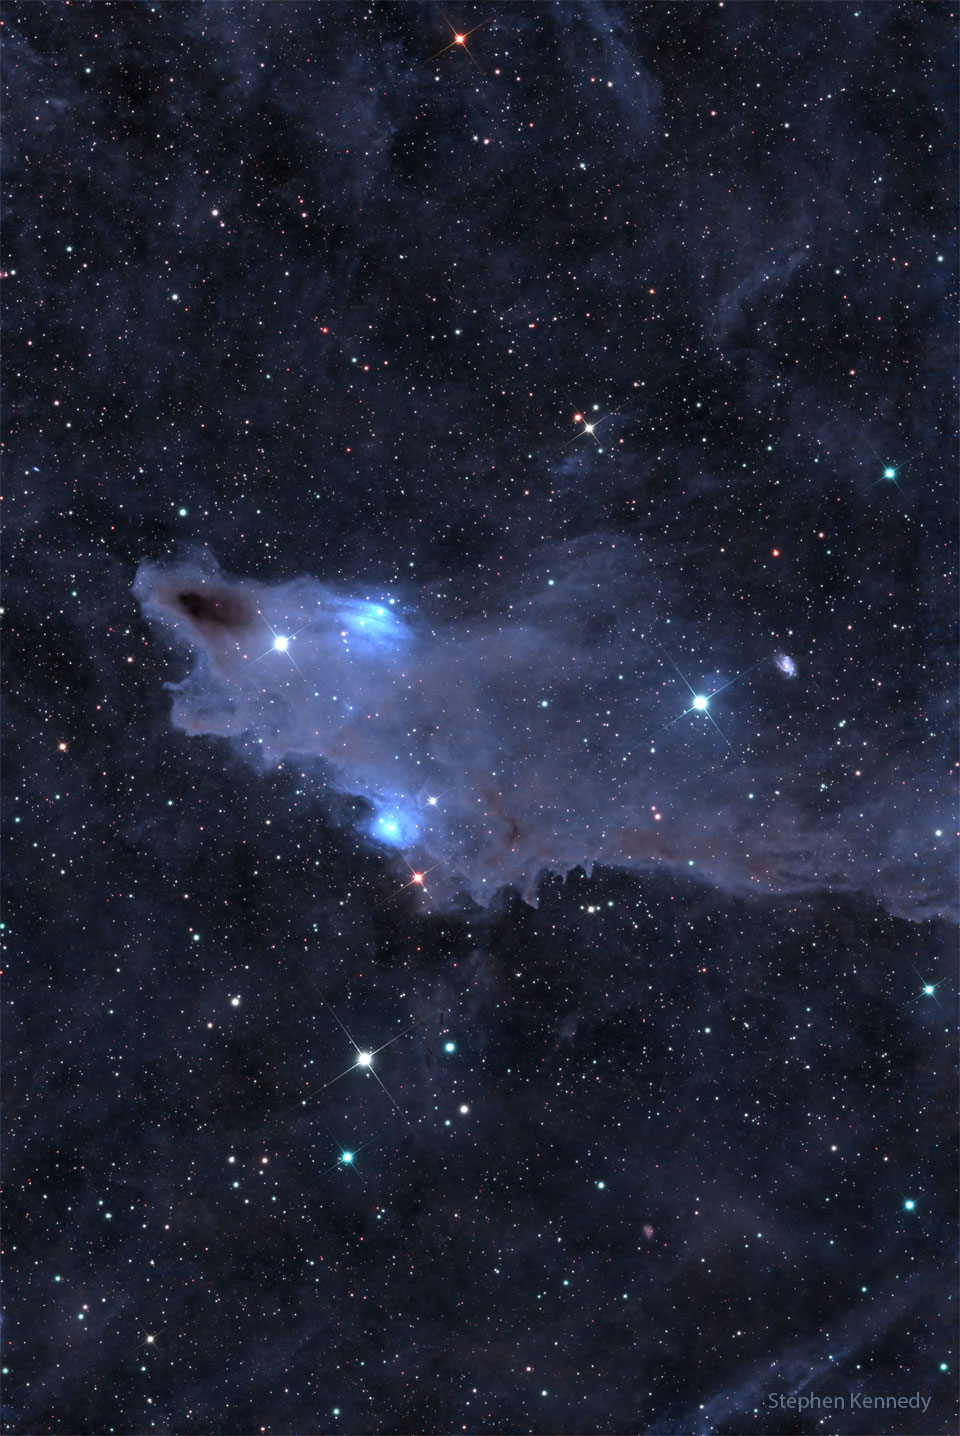 Der Hainebel im Sternbild Kepheus ist eine blau leuchtende Wolke aus Staub und Gas. Sie leuchtet in der Bildmitte.